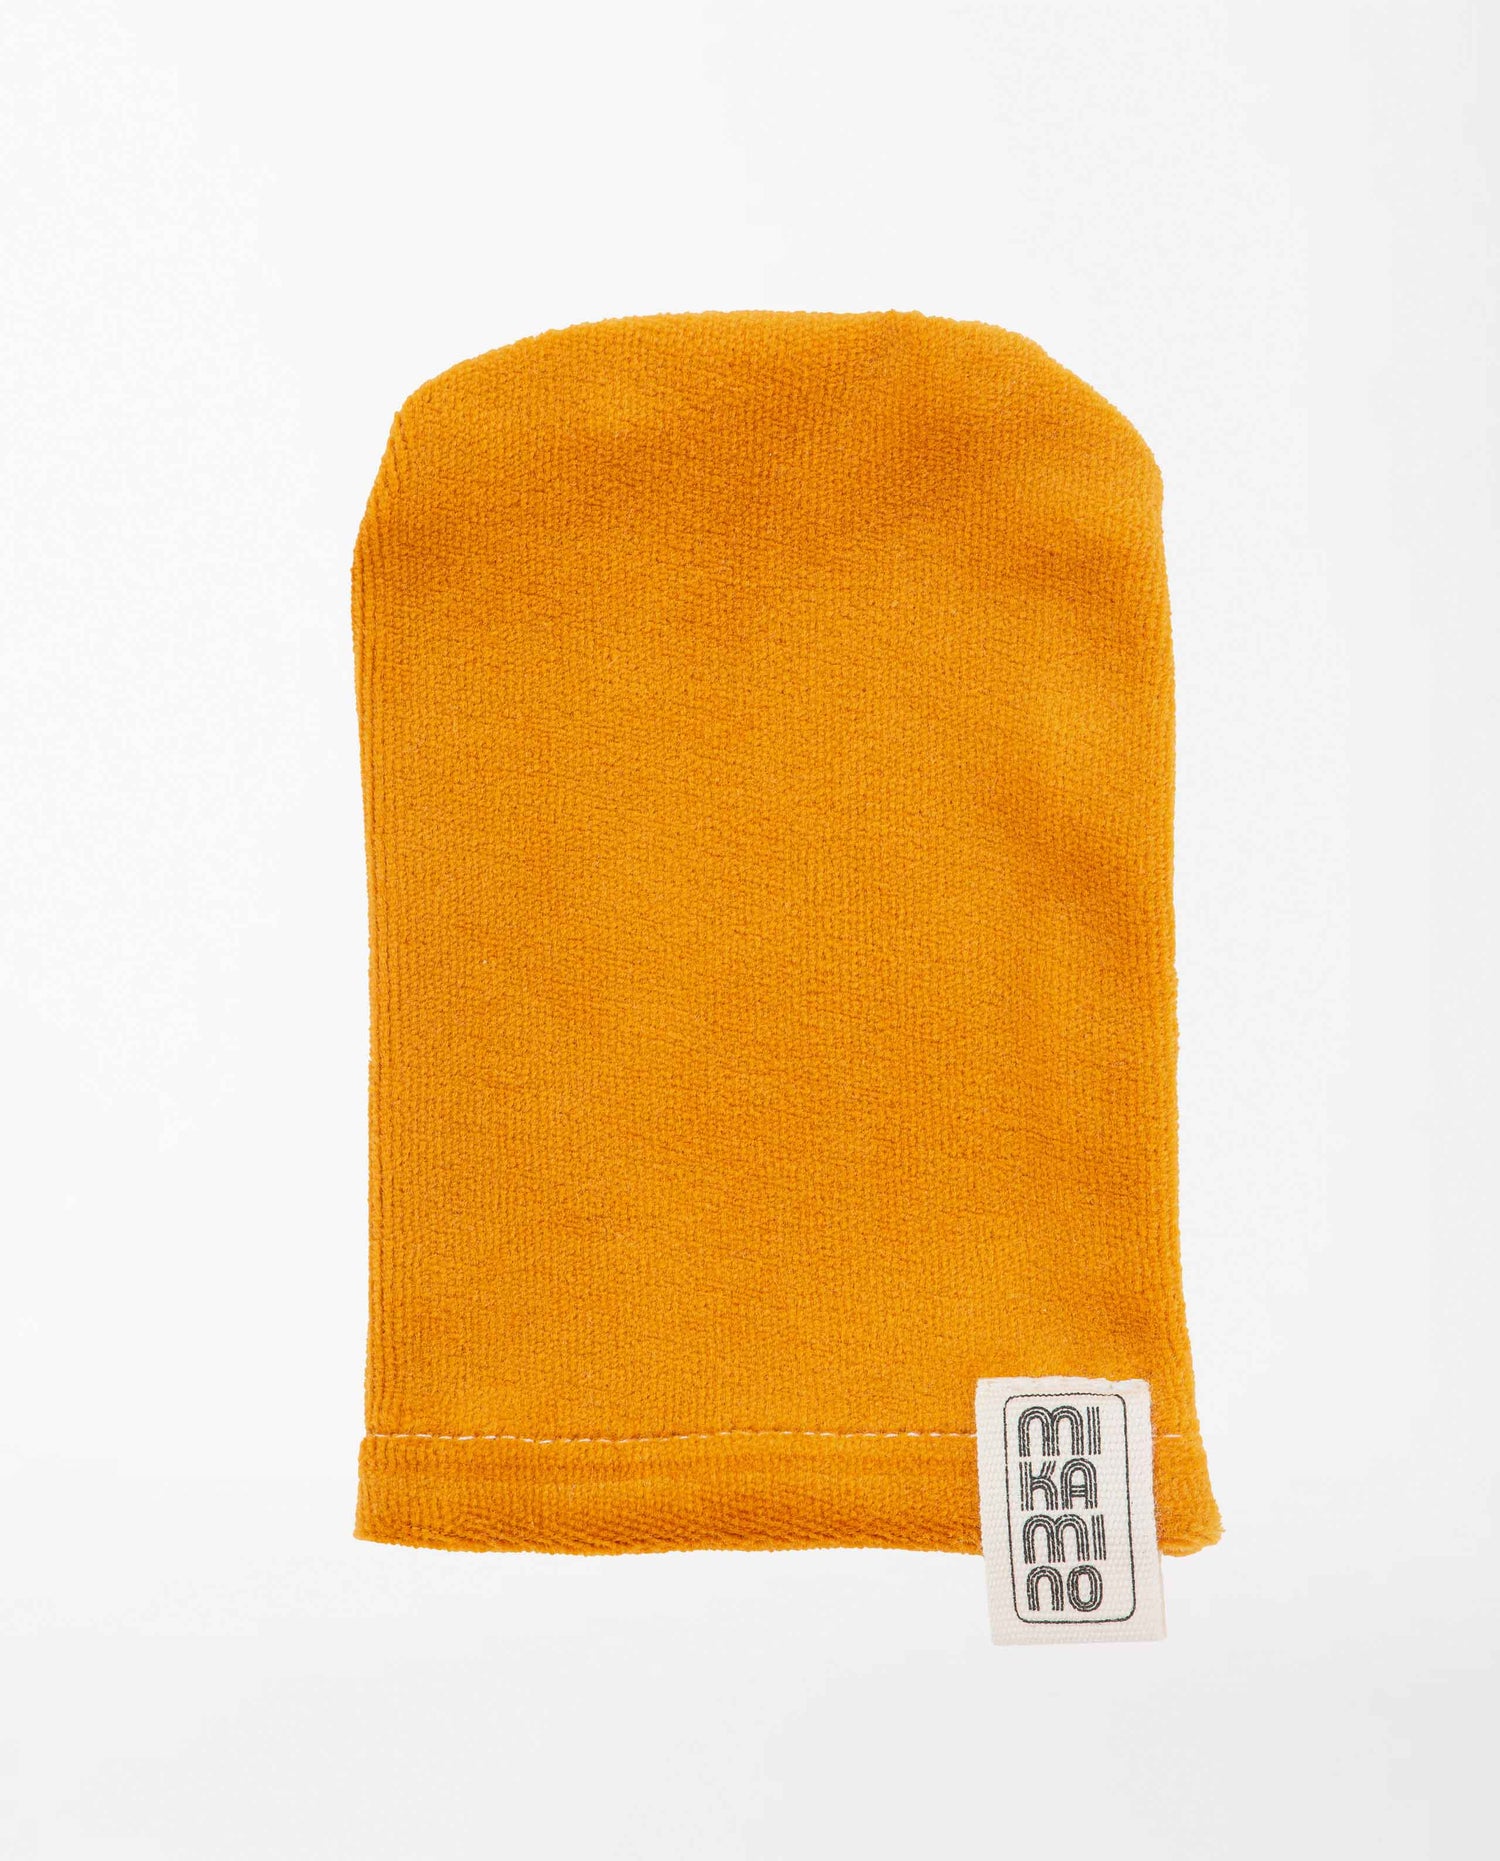 marché commun mikamino gant démaquillant nettoyant peau zéro-déchet coton biologique